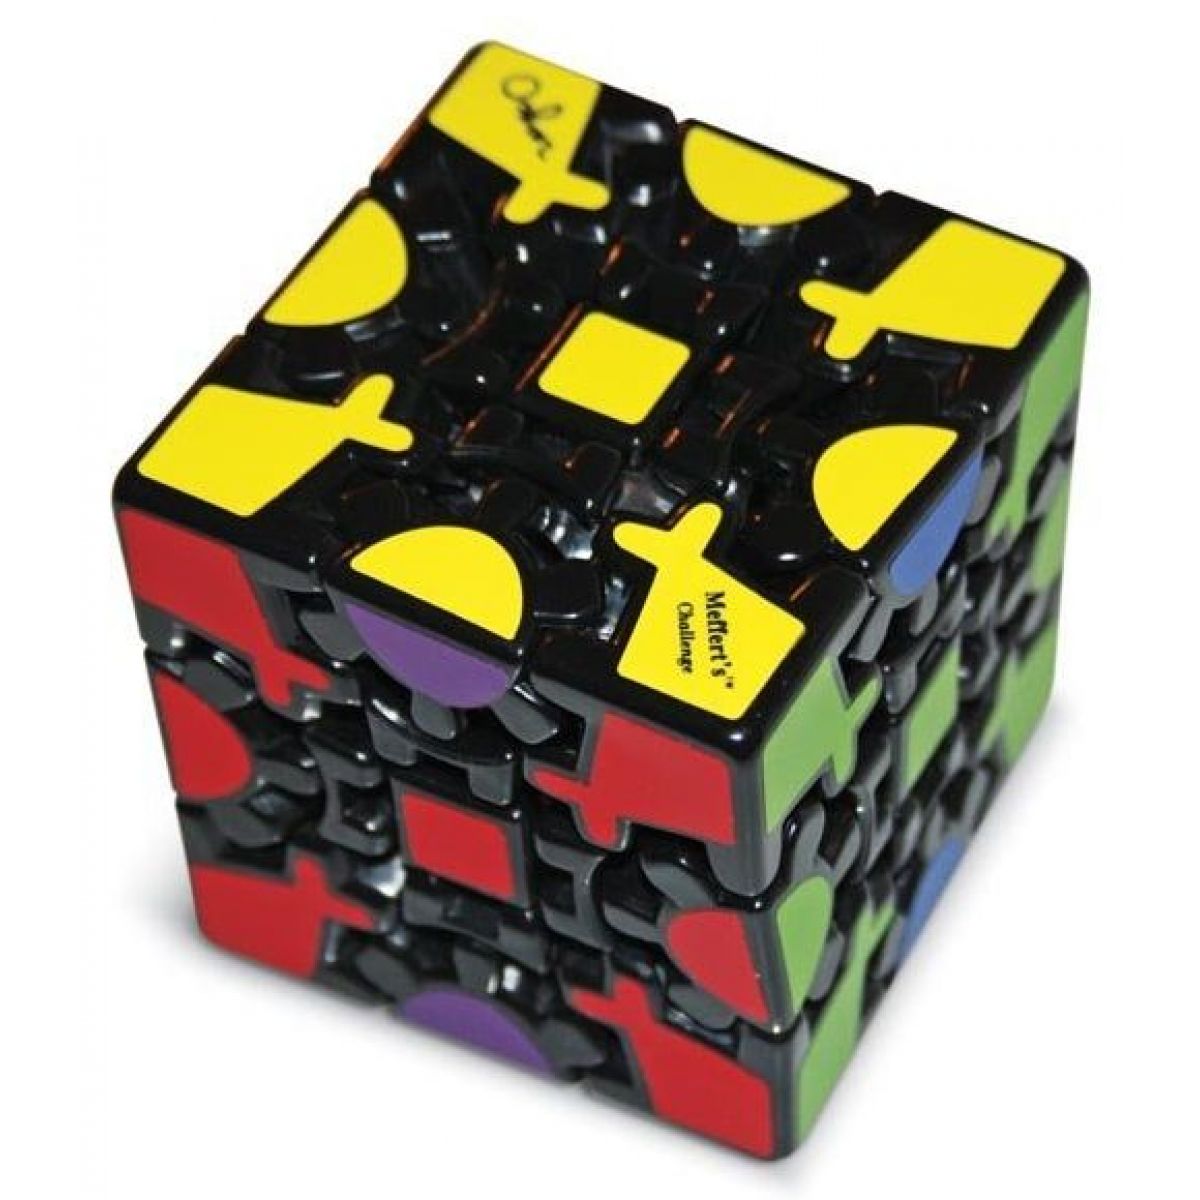 Gear cube. Meffert's David Gear Cube v2. Головоломка Meffert's Gear Cube. Гир Кьюб ГИРЭТ. Meffert's Maltese Gear Cube.